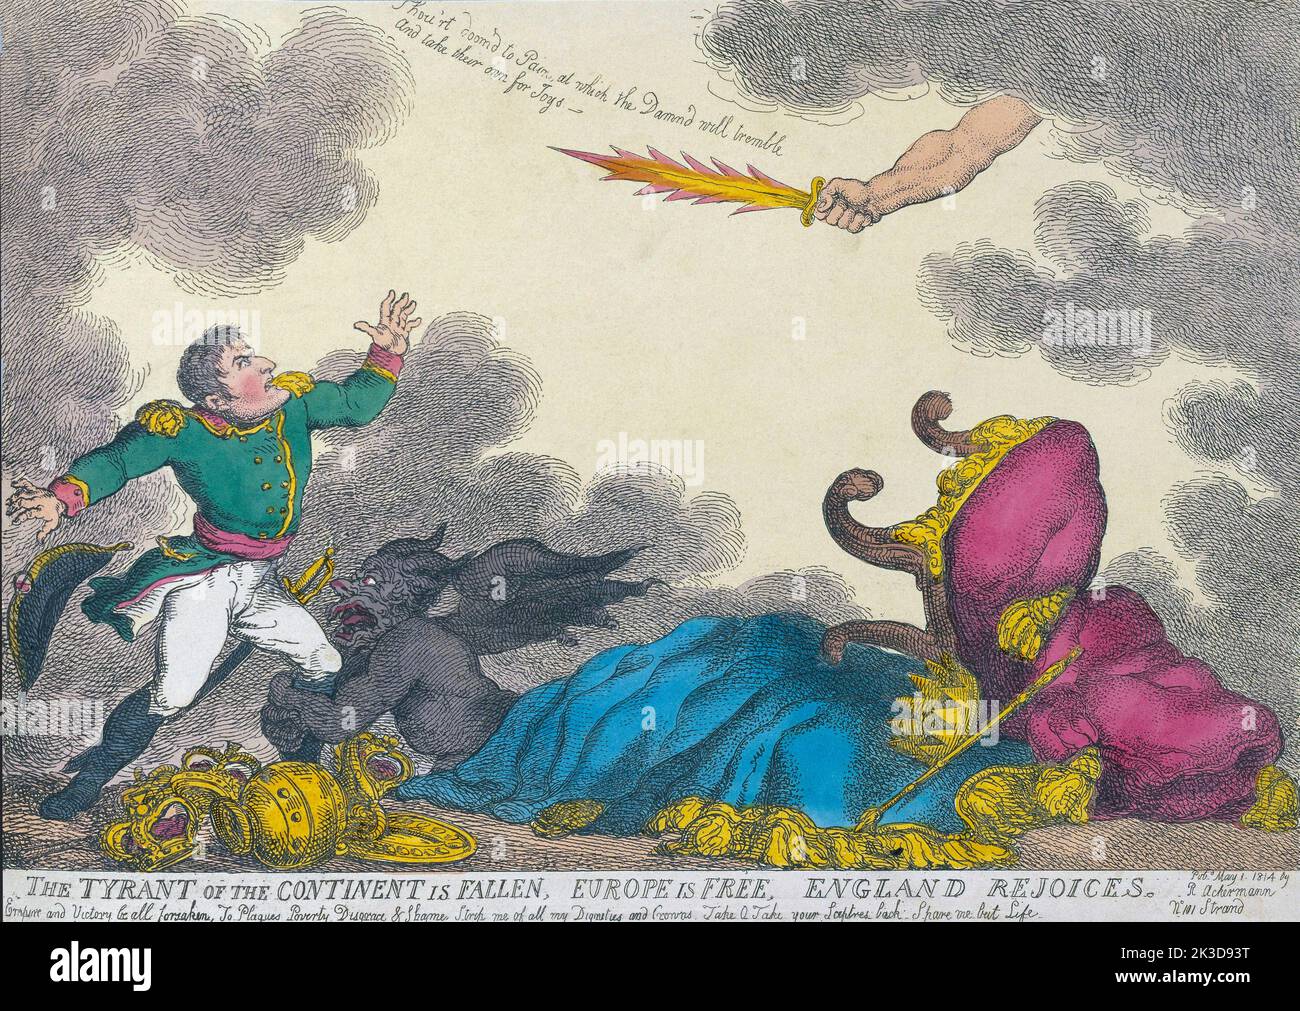 El tirano del continente ha caído, Europa es libre, Inglaterra se regocija. Dibujos animados del artista inglés Thomas Rowlandson, celebrando la abdicación de Napoleón Bonaparte el 11 de abril de 1814 y su posterior exilio a Elba. Después de una obra fechada el 1 de mayo de 1814. Foto de stock